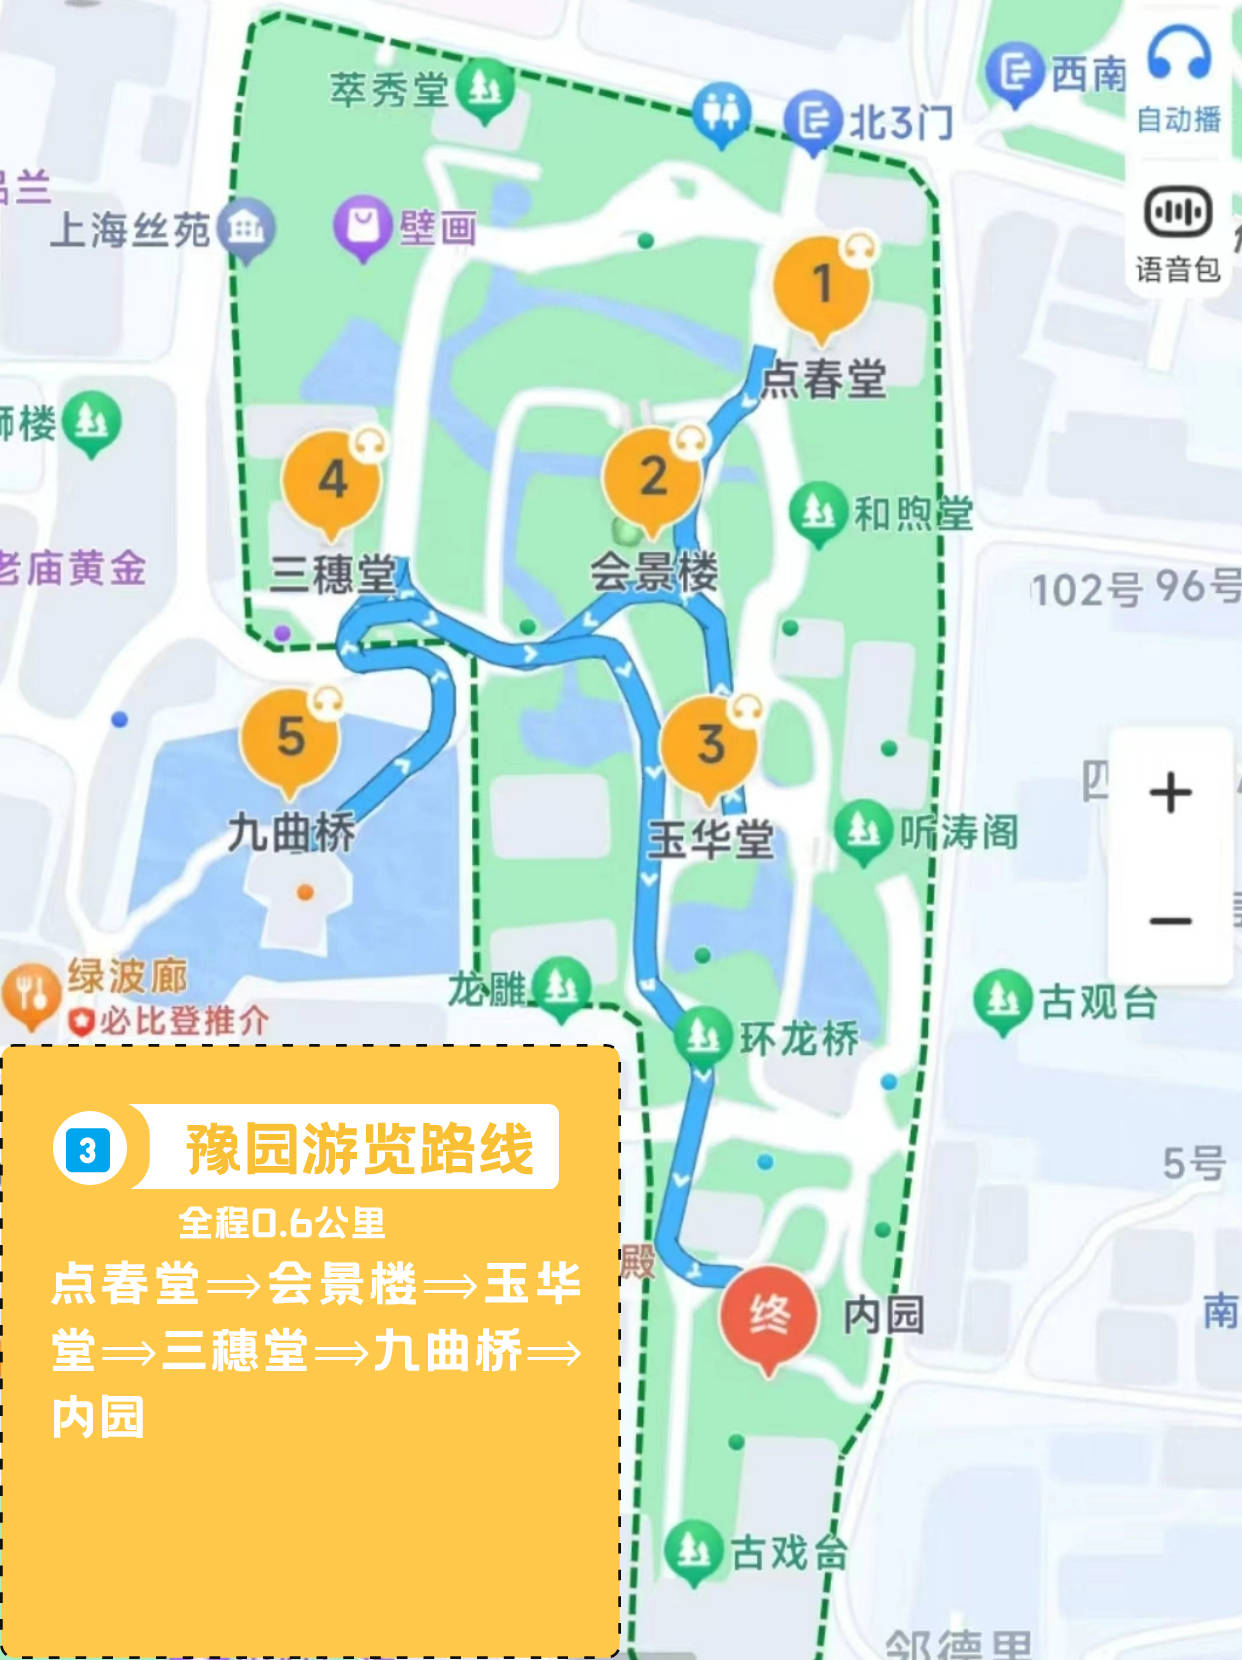 新鲜出炉的上海豫园游玩打卡路线!